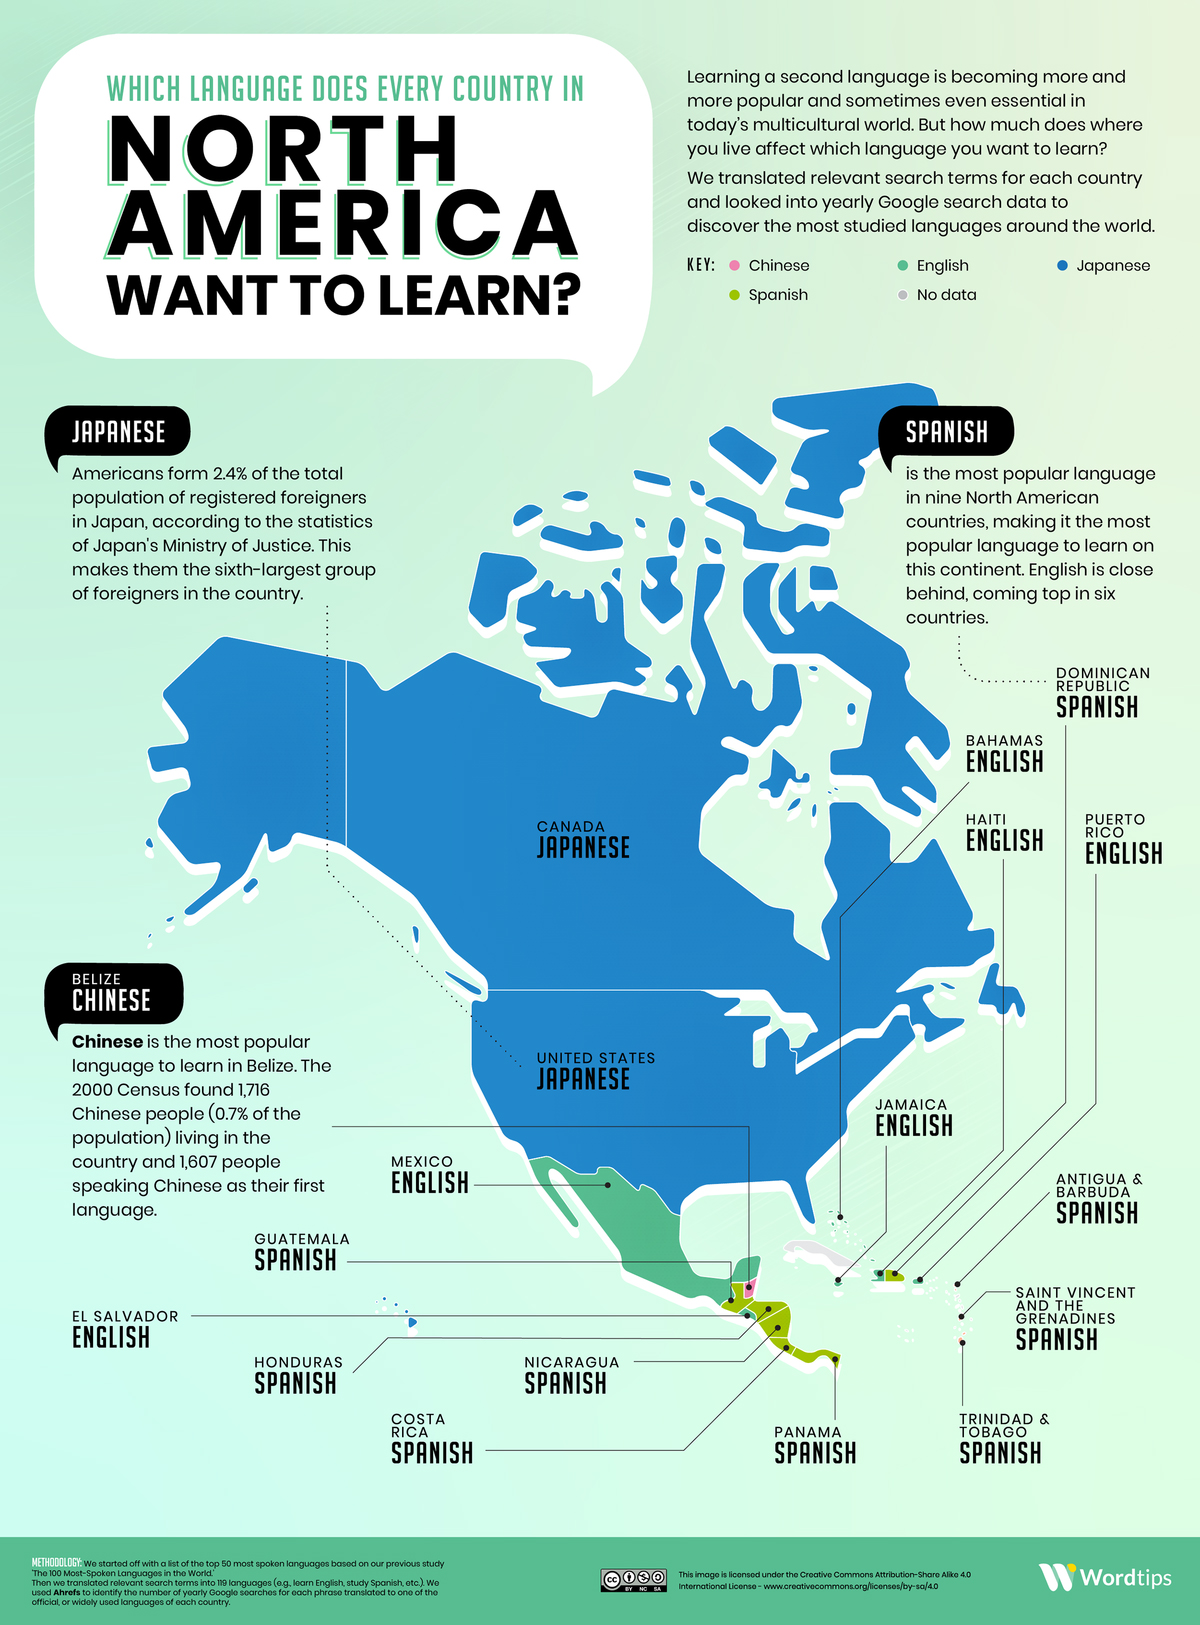 Ngôn ngữ mà các nước Bắc Mỹ muốn học nhất